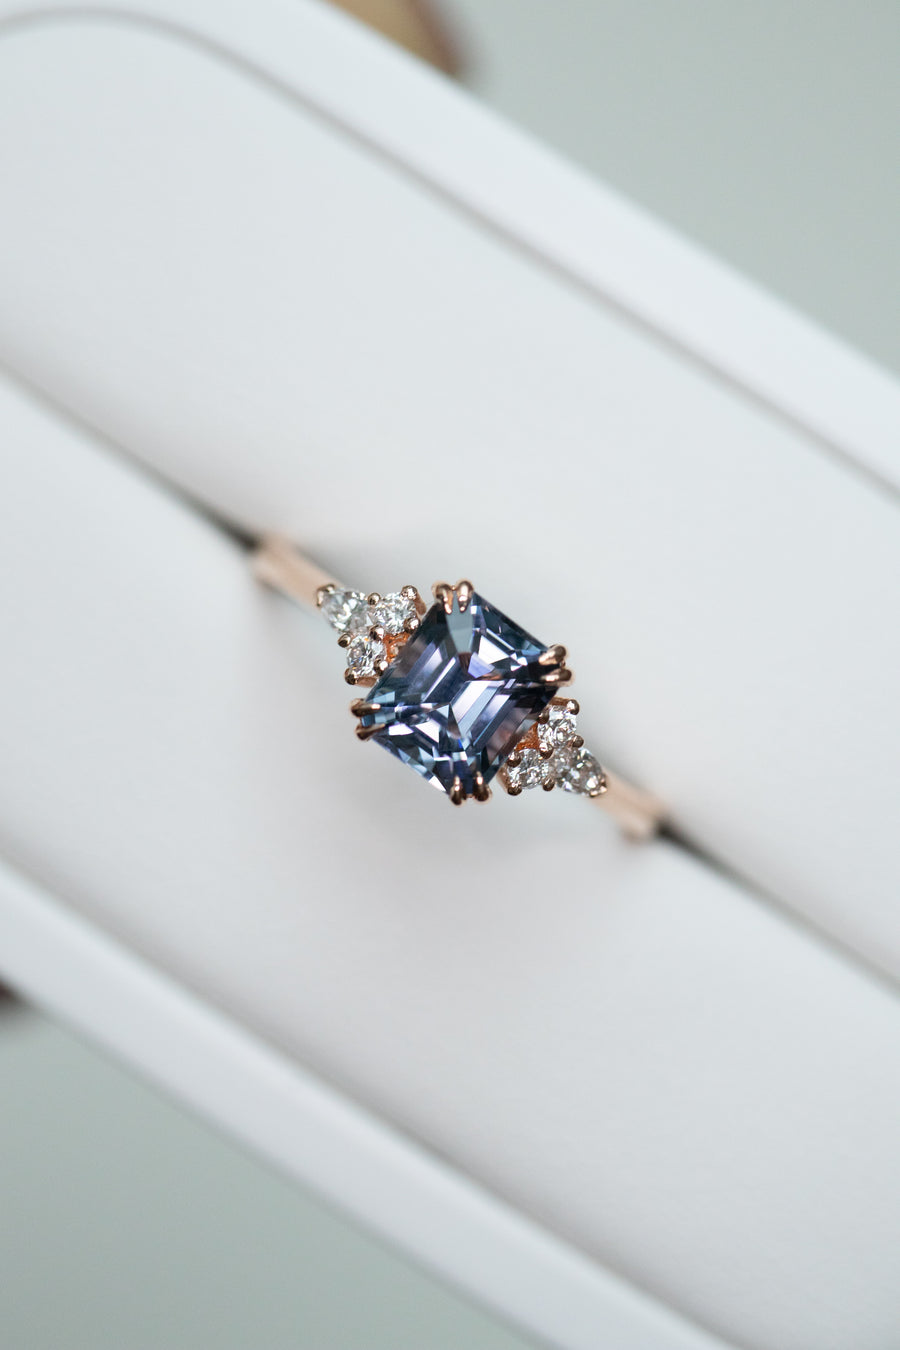 1.30carat Emerald Greyish Blue Spinel & total 0.13carat Diamonds 18K Rose Gold Ring